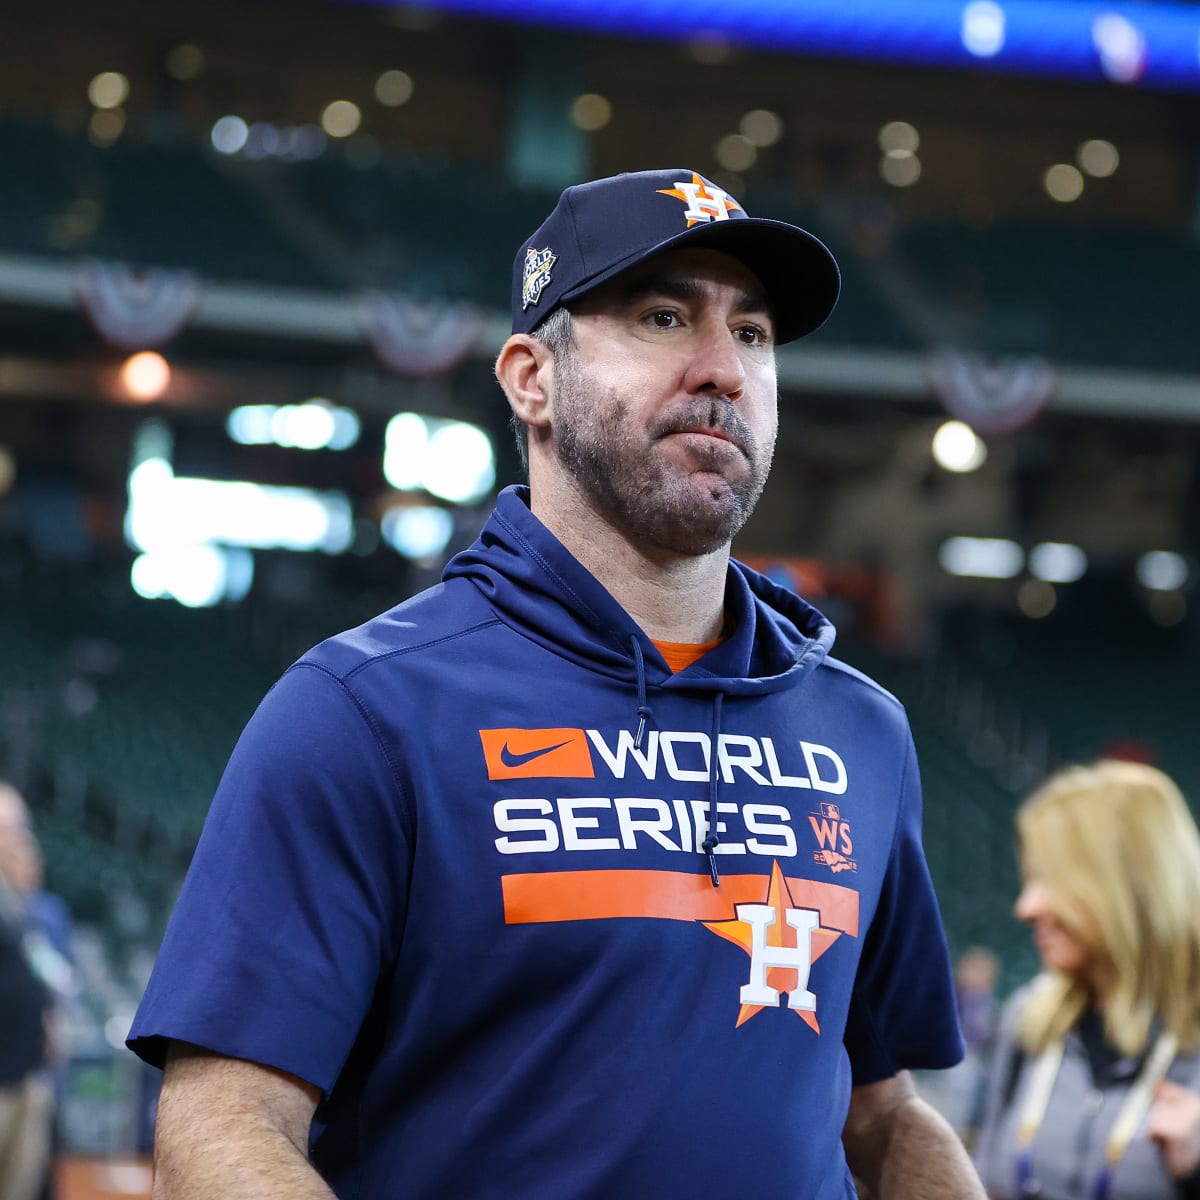 Justin Verlander addresses Mets 'diva' rumors that allegedly ticked off Max  Scherzer